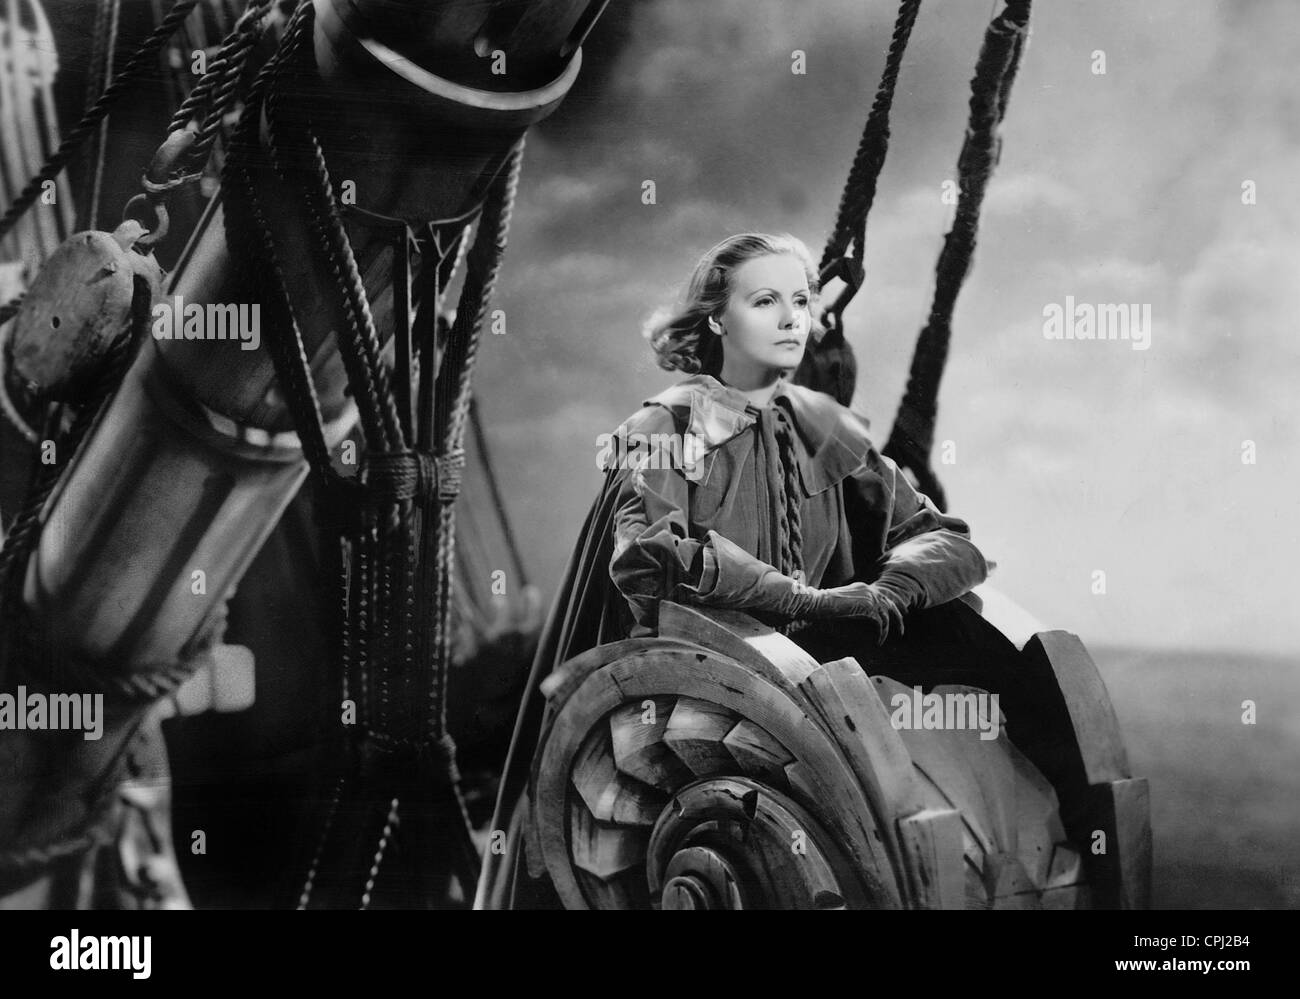 Greata Garbo in dem Film "Königin Christine," unter der Regie von Rouben Mamoulian (USA, 1933). Stockfoto